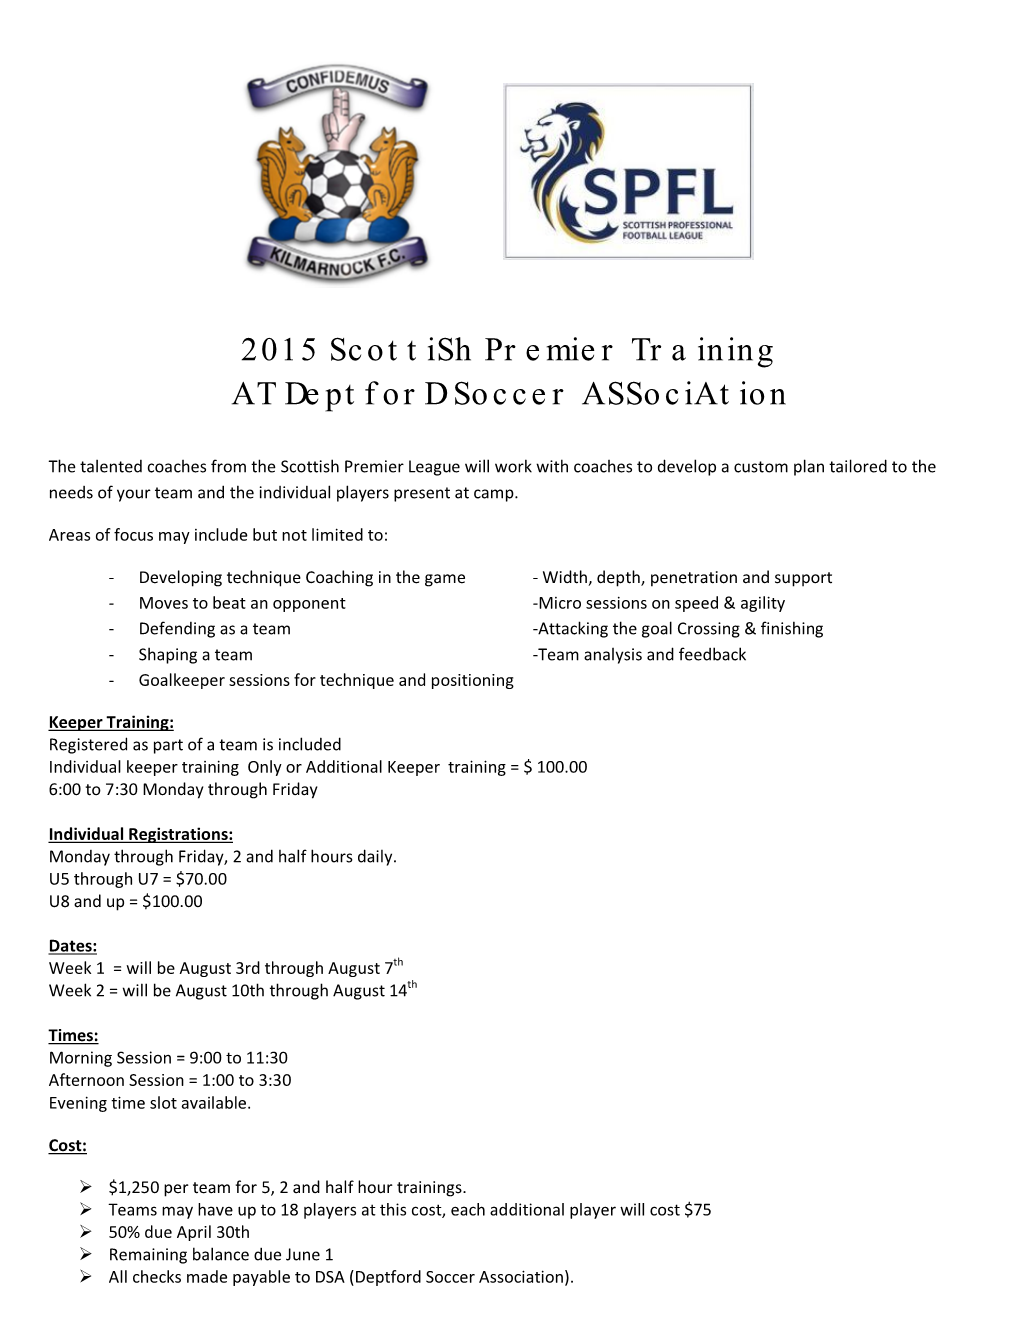 2015 Scottish Premier Training at Deptford Soccer Association